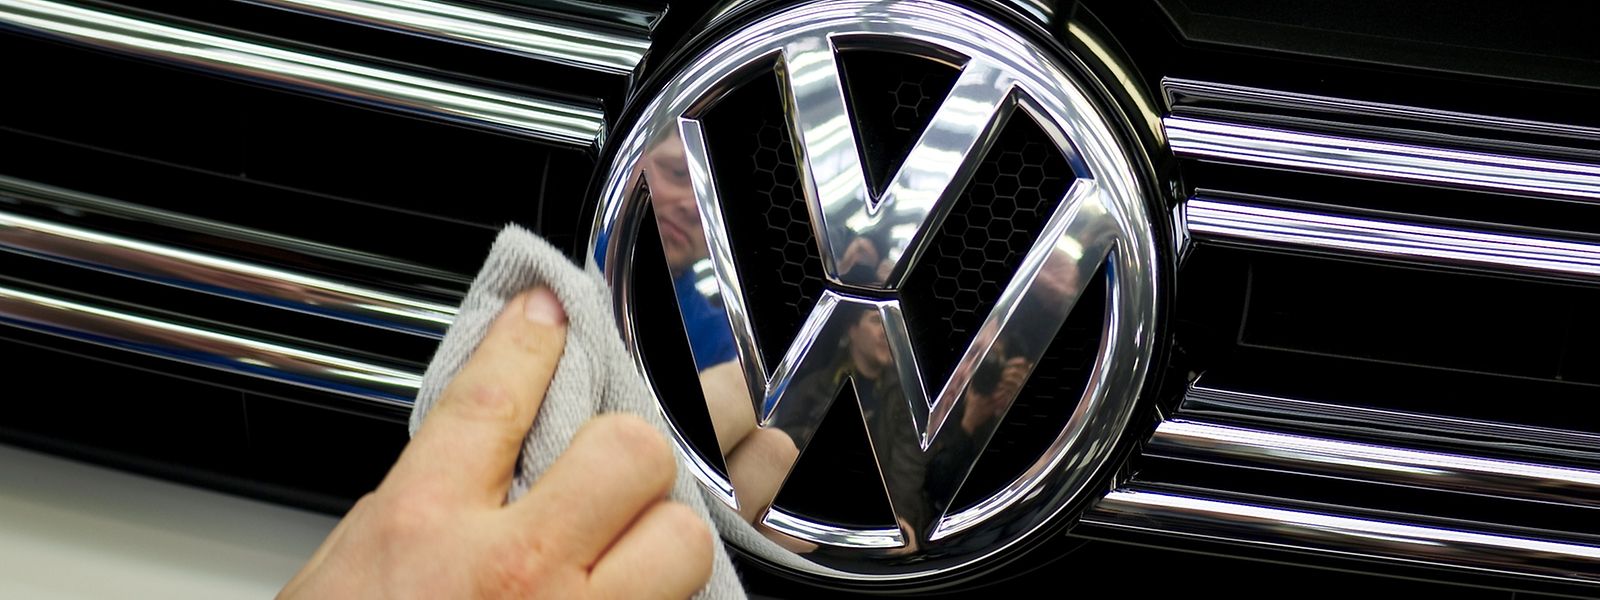 Europas größter Autobauer fuhr im Startquartal glänzende Zahlen ein. Nach dem Rücktritt von Chefkontrolleur Piëch hat sich aber ein Machtvakuum bei VW gebildet.